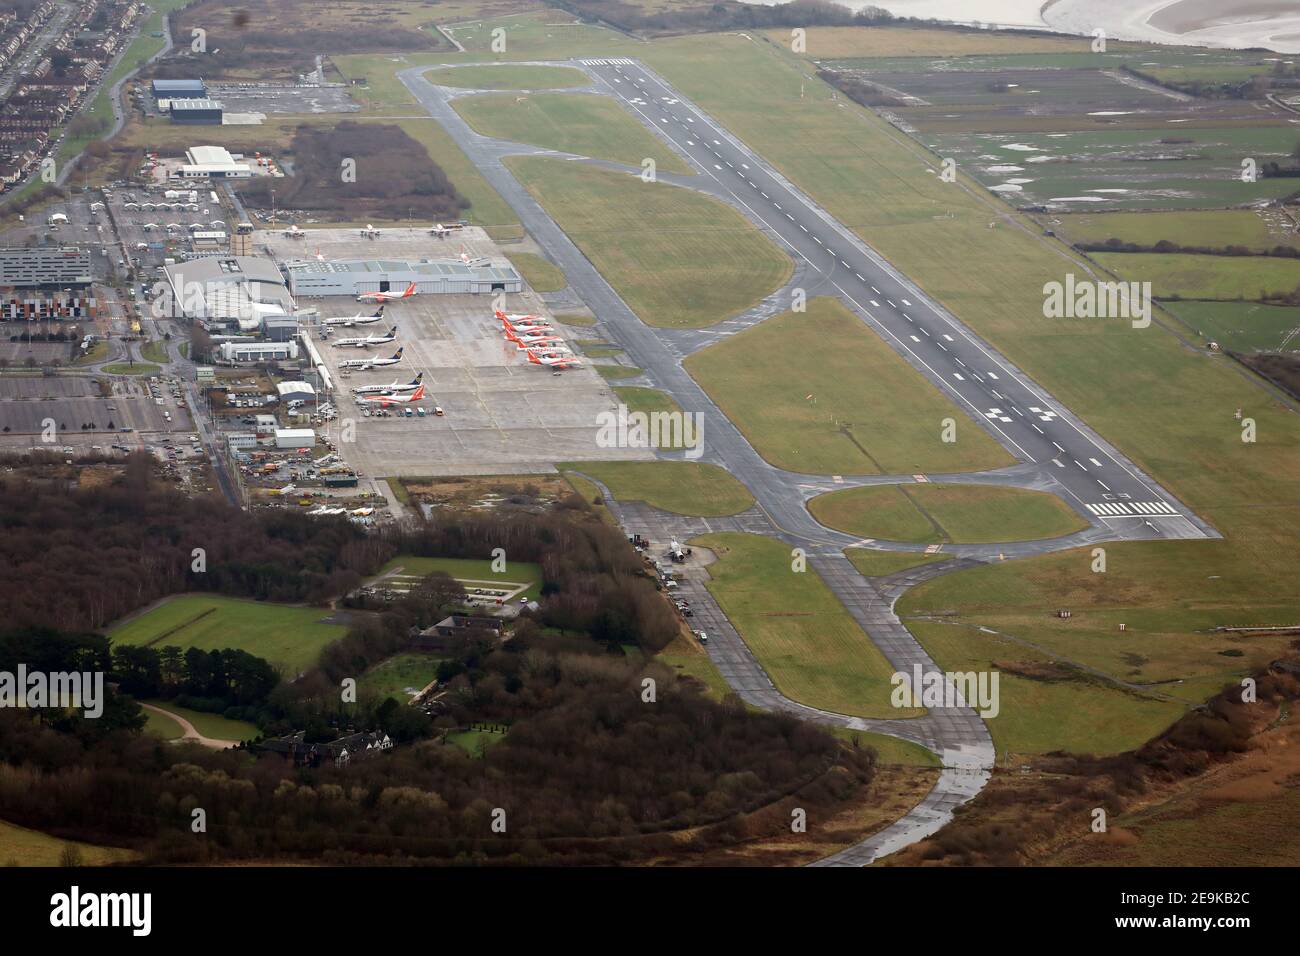 Vista aerea dell'aeroporto John Lennon di Liverpool Foto Stock